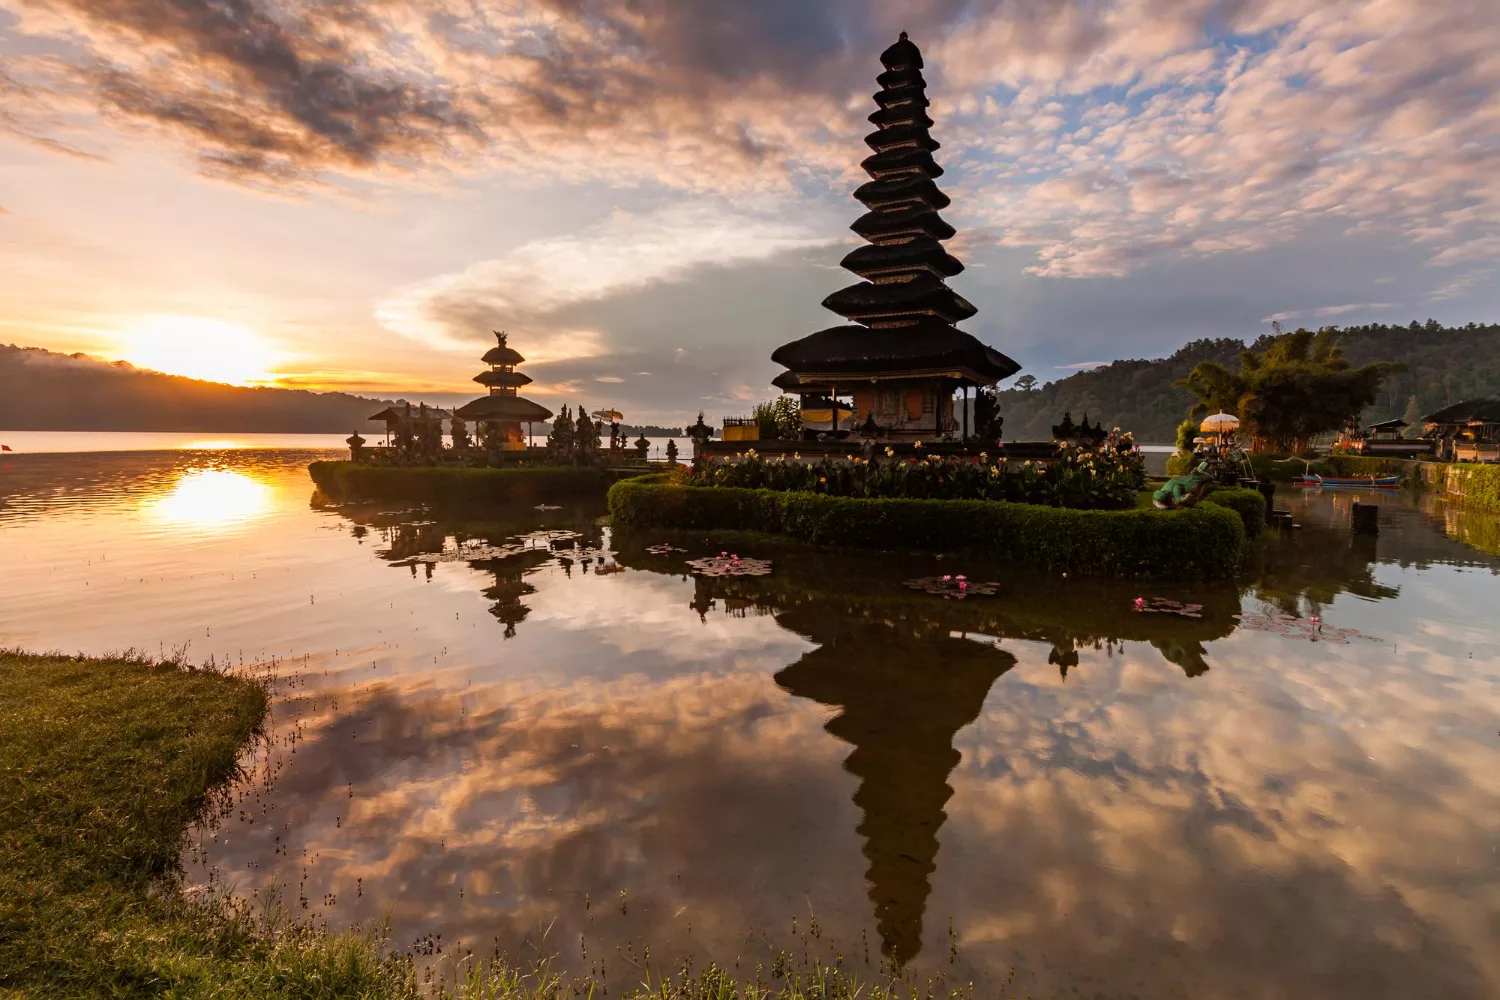 Where is Bali - Ulun Danu Bratan Temple